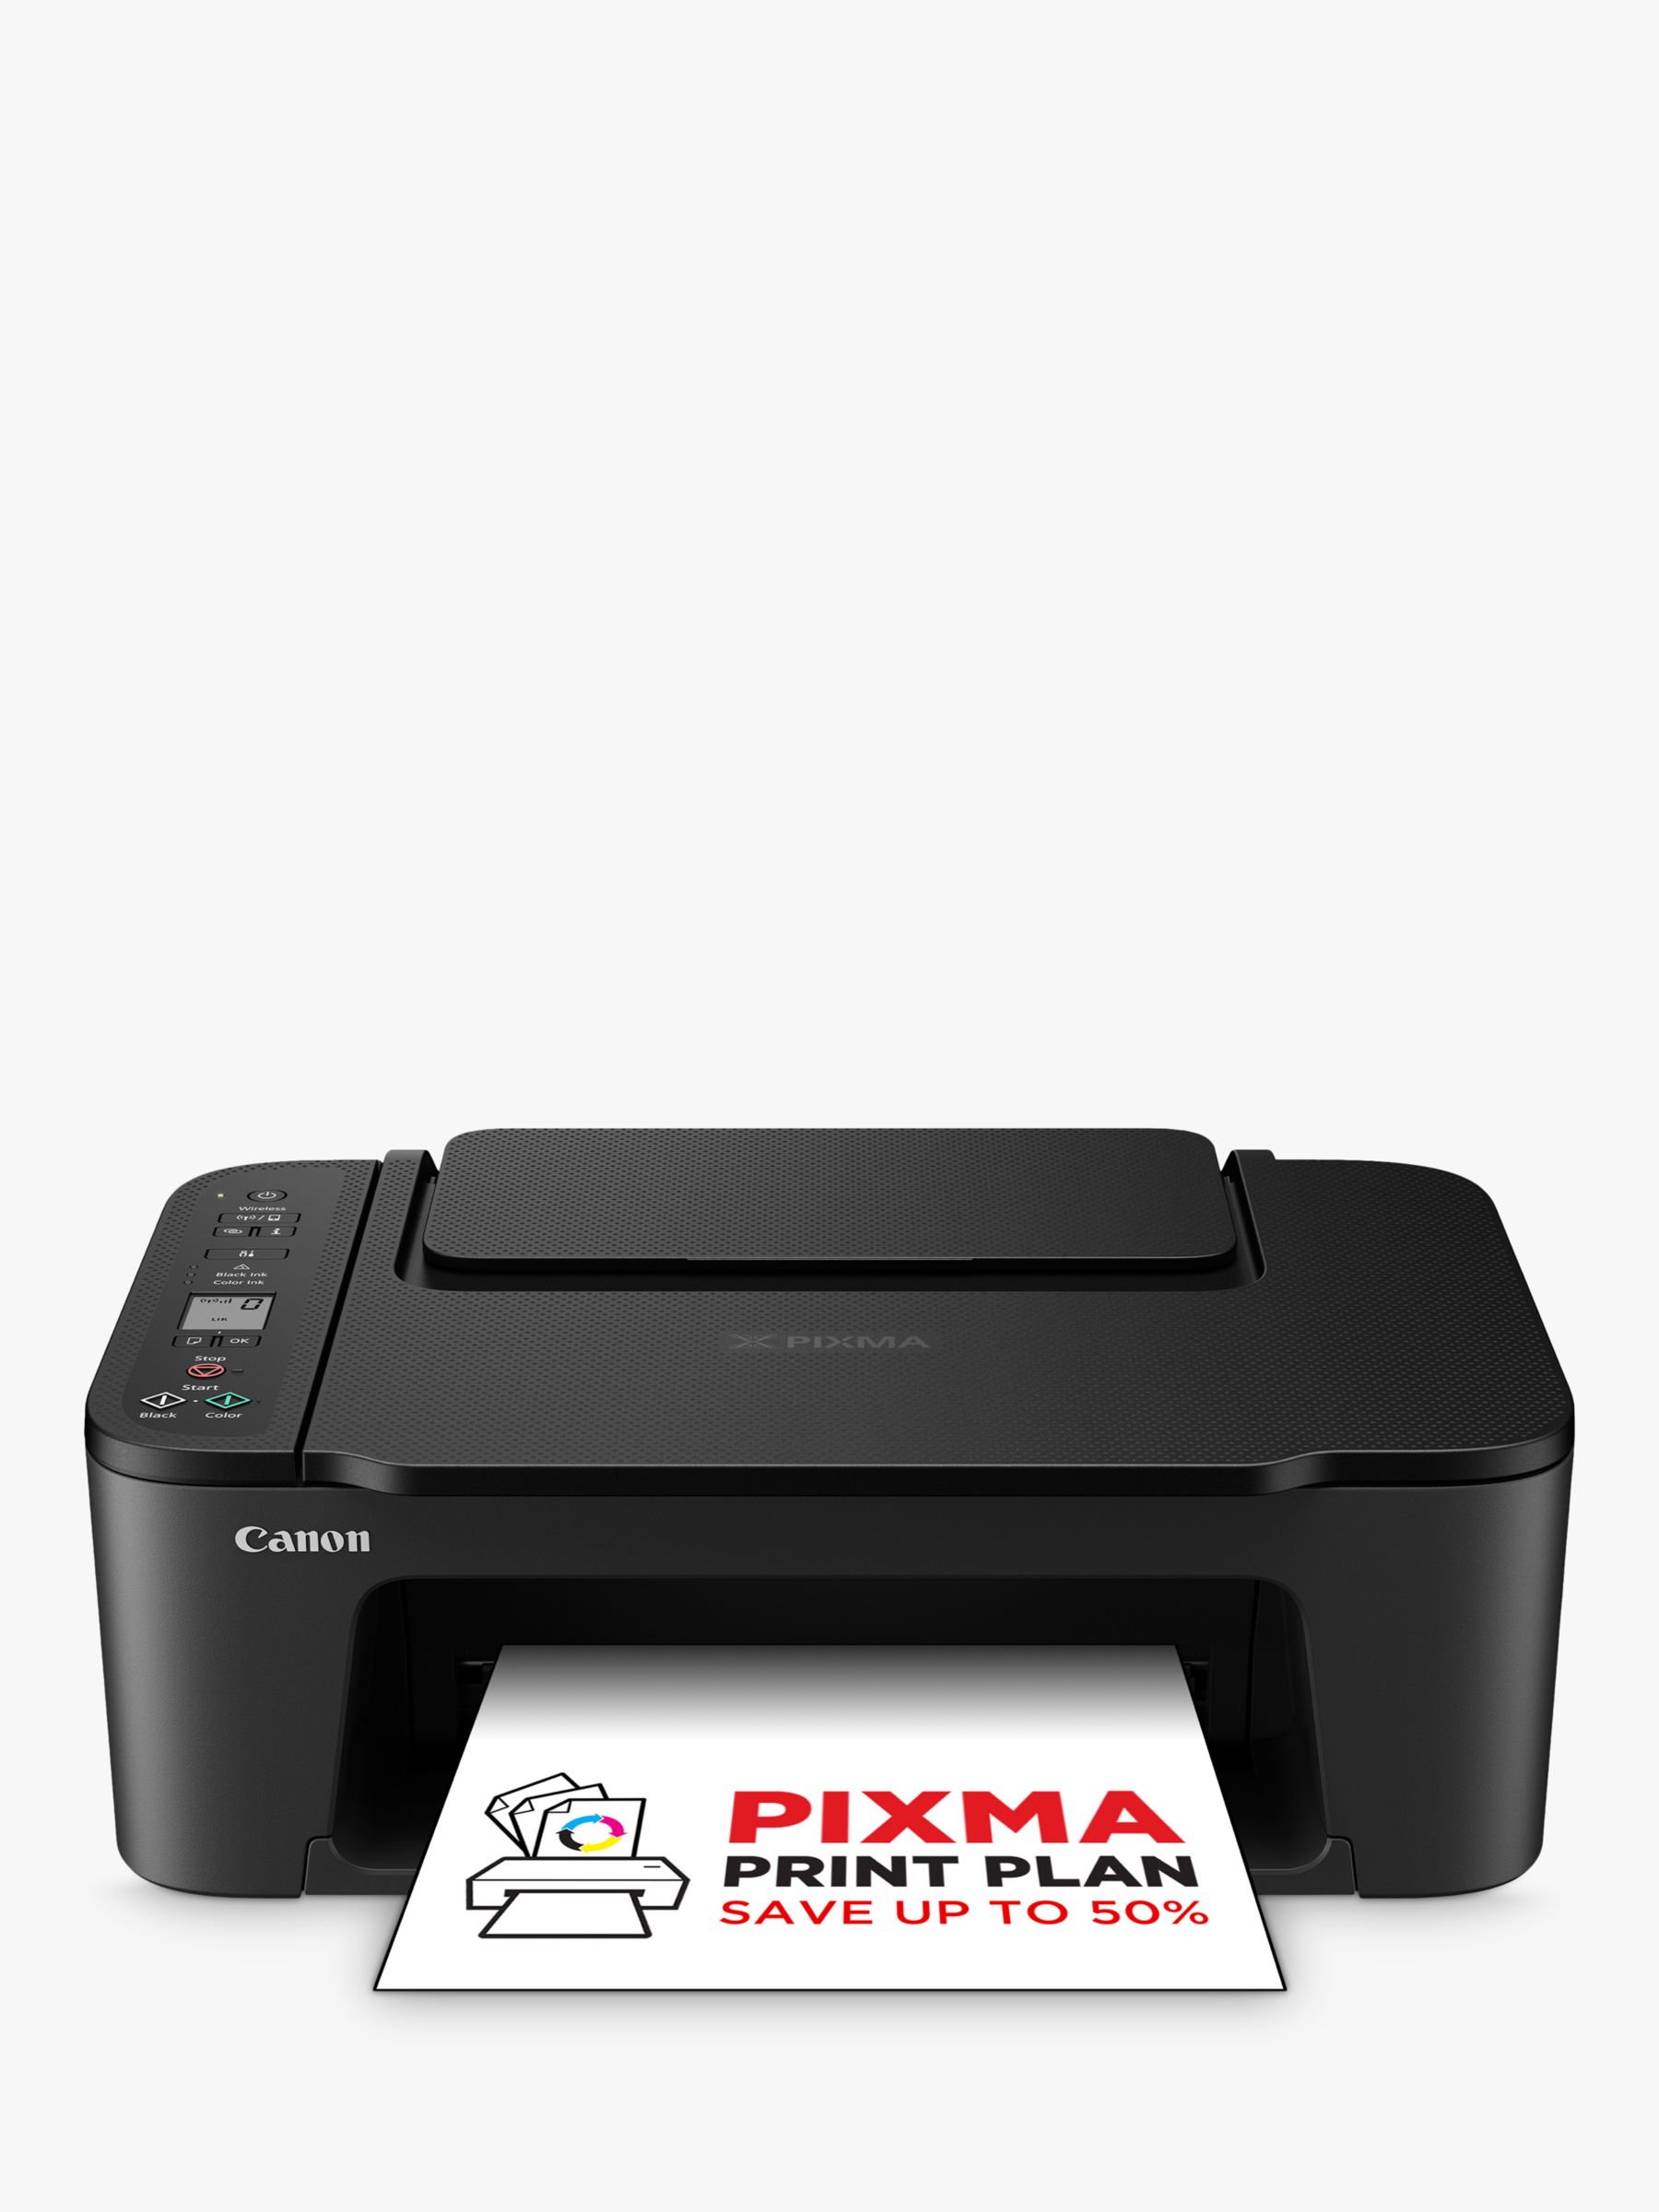 Canon PIXMA TS3550i Black All-in-One Wireless Wi-Fi Printer